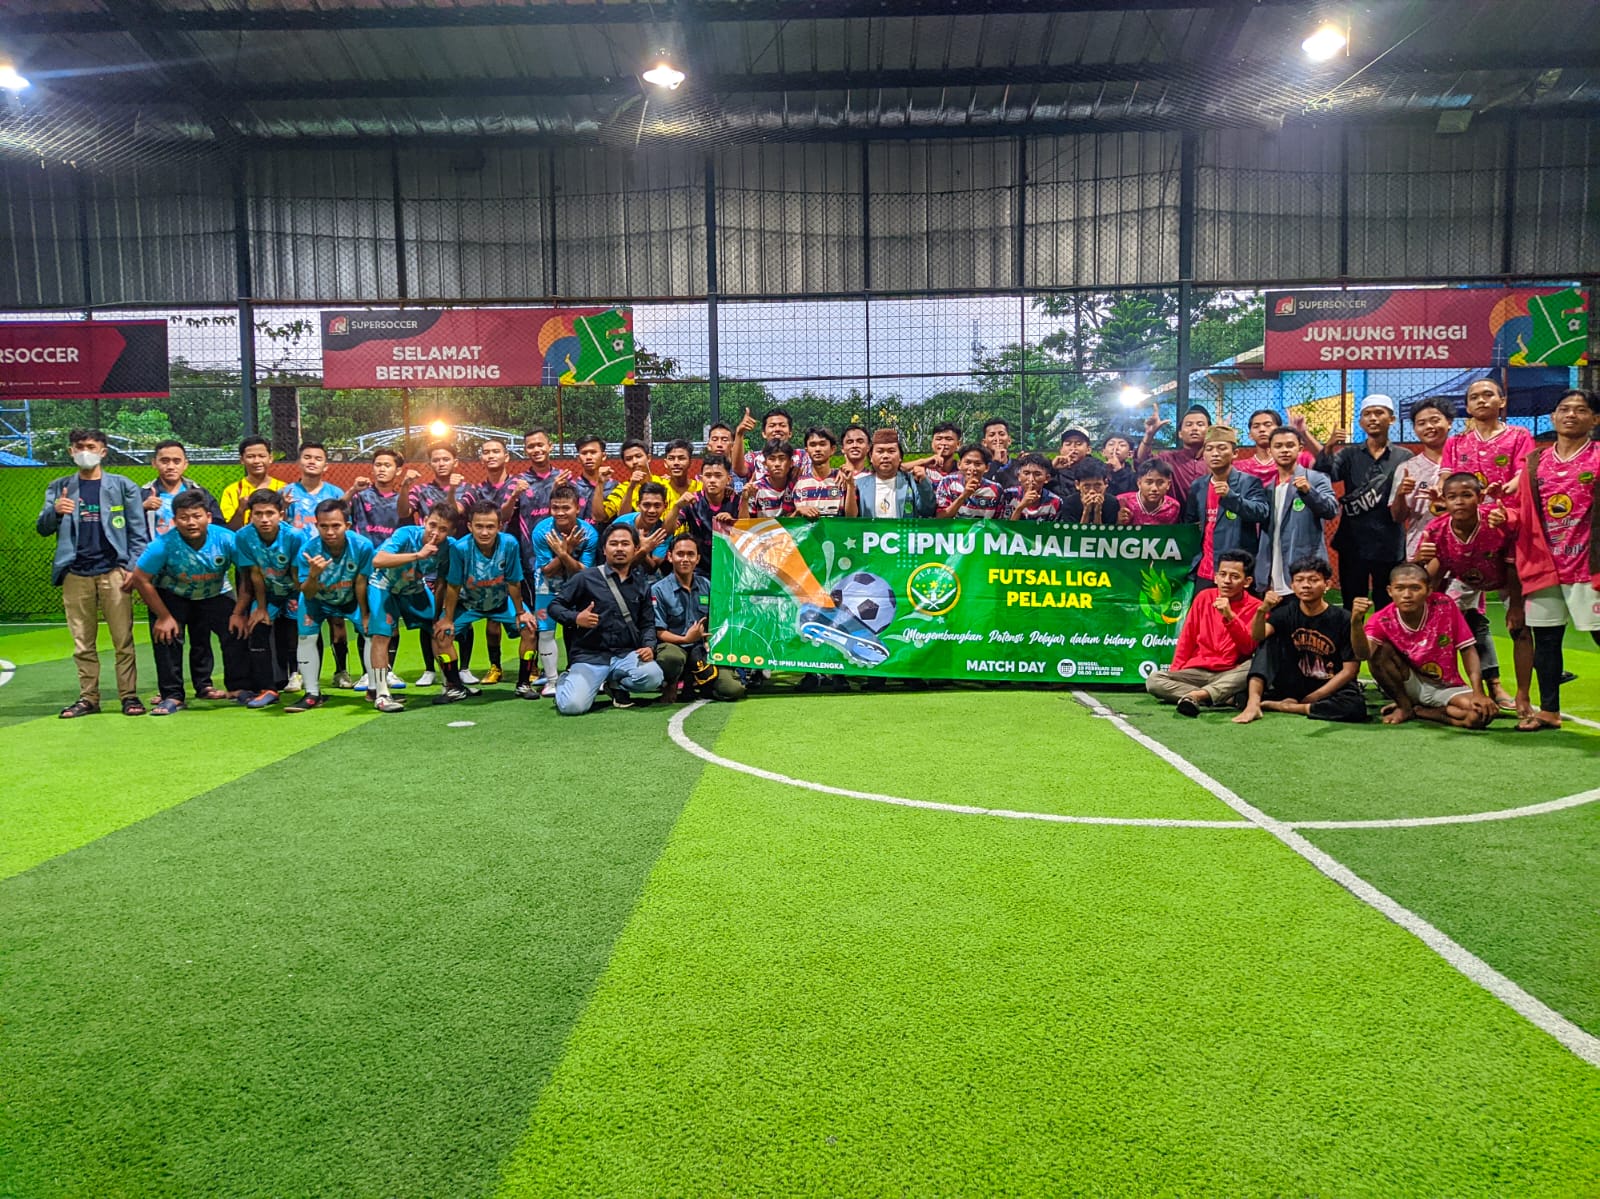 PAC IPNU Ligung Ganyang Tim Lawan Hingga Juara 1 pada Futsal Pelajar